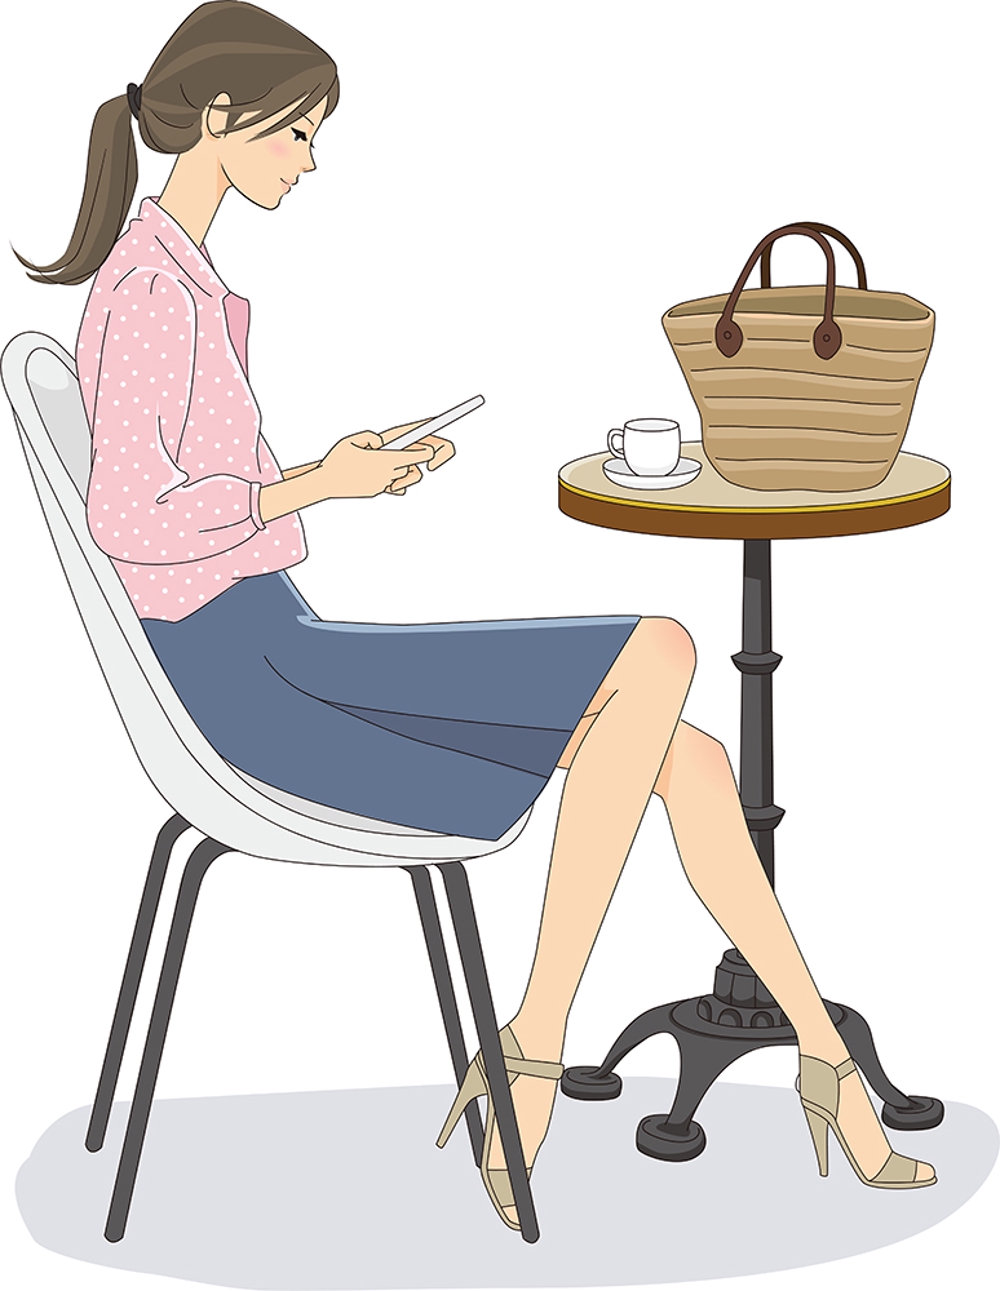 カフェでスマートフォンを操作する女性